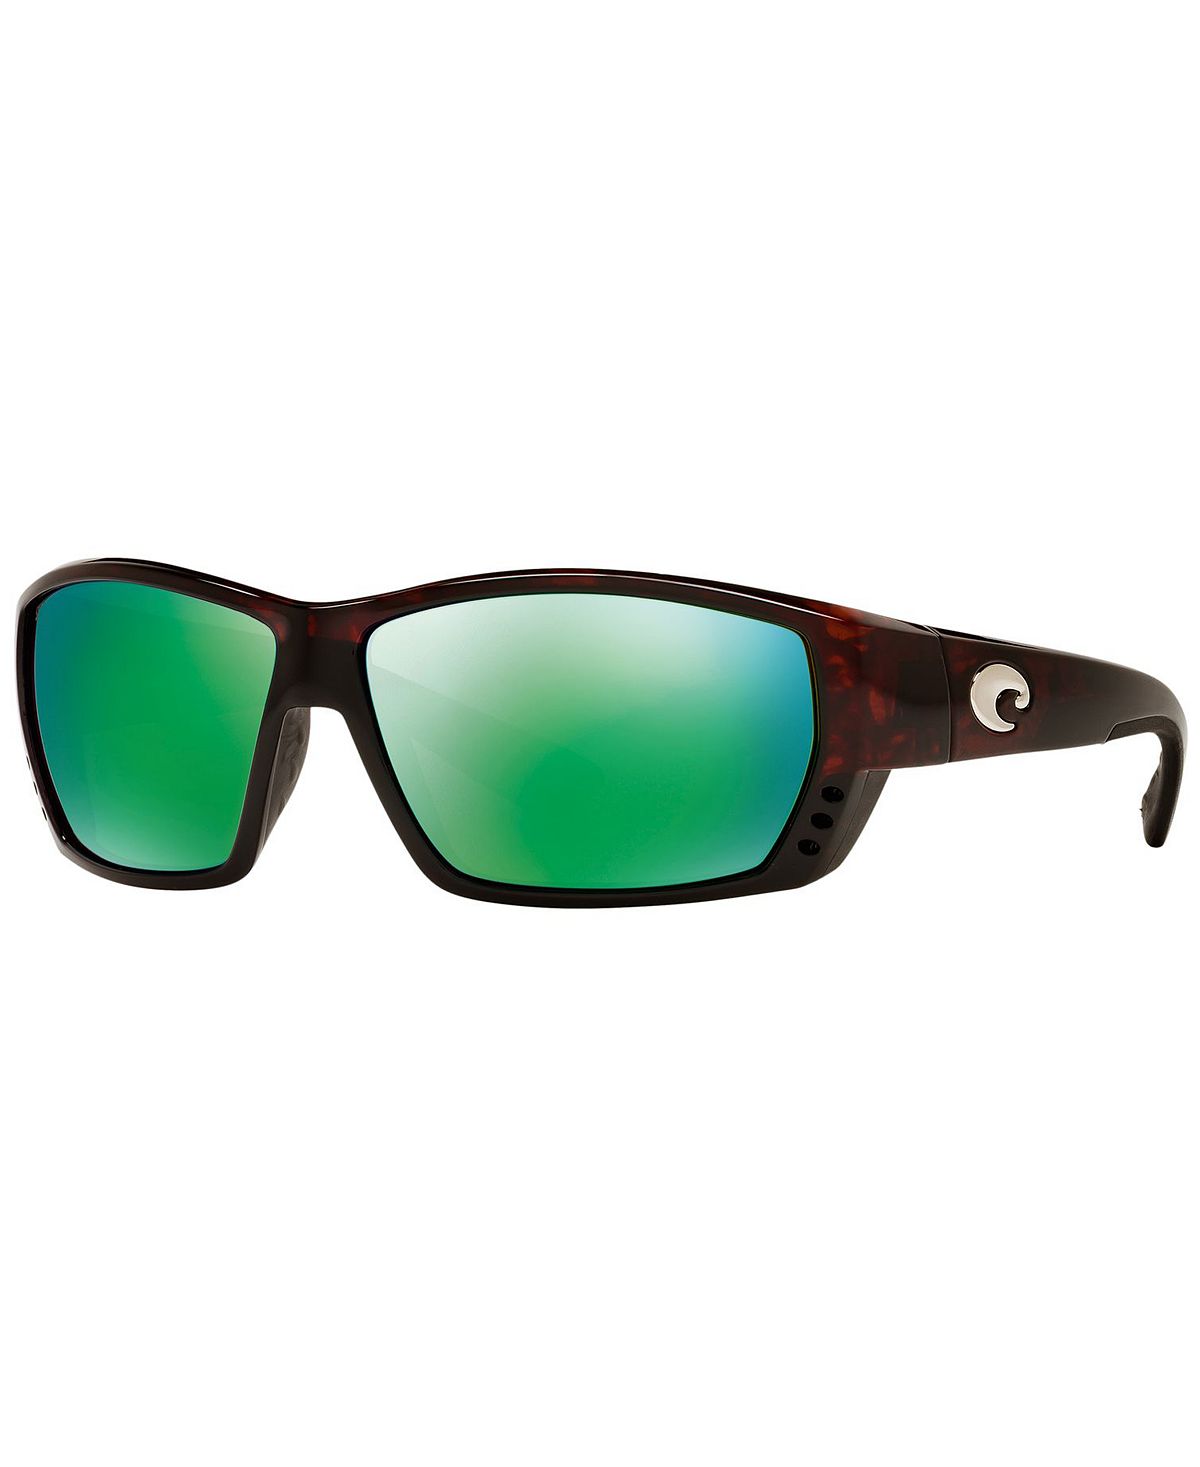 Поляризованные солнцезащитные очки, TUNA ALLEY Costa Del Mar safari 6 7 5x17 6x130 d84 1 et50 gun metallic mirror face